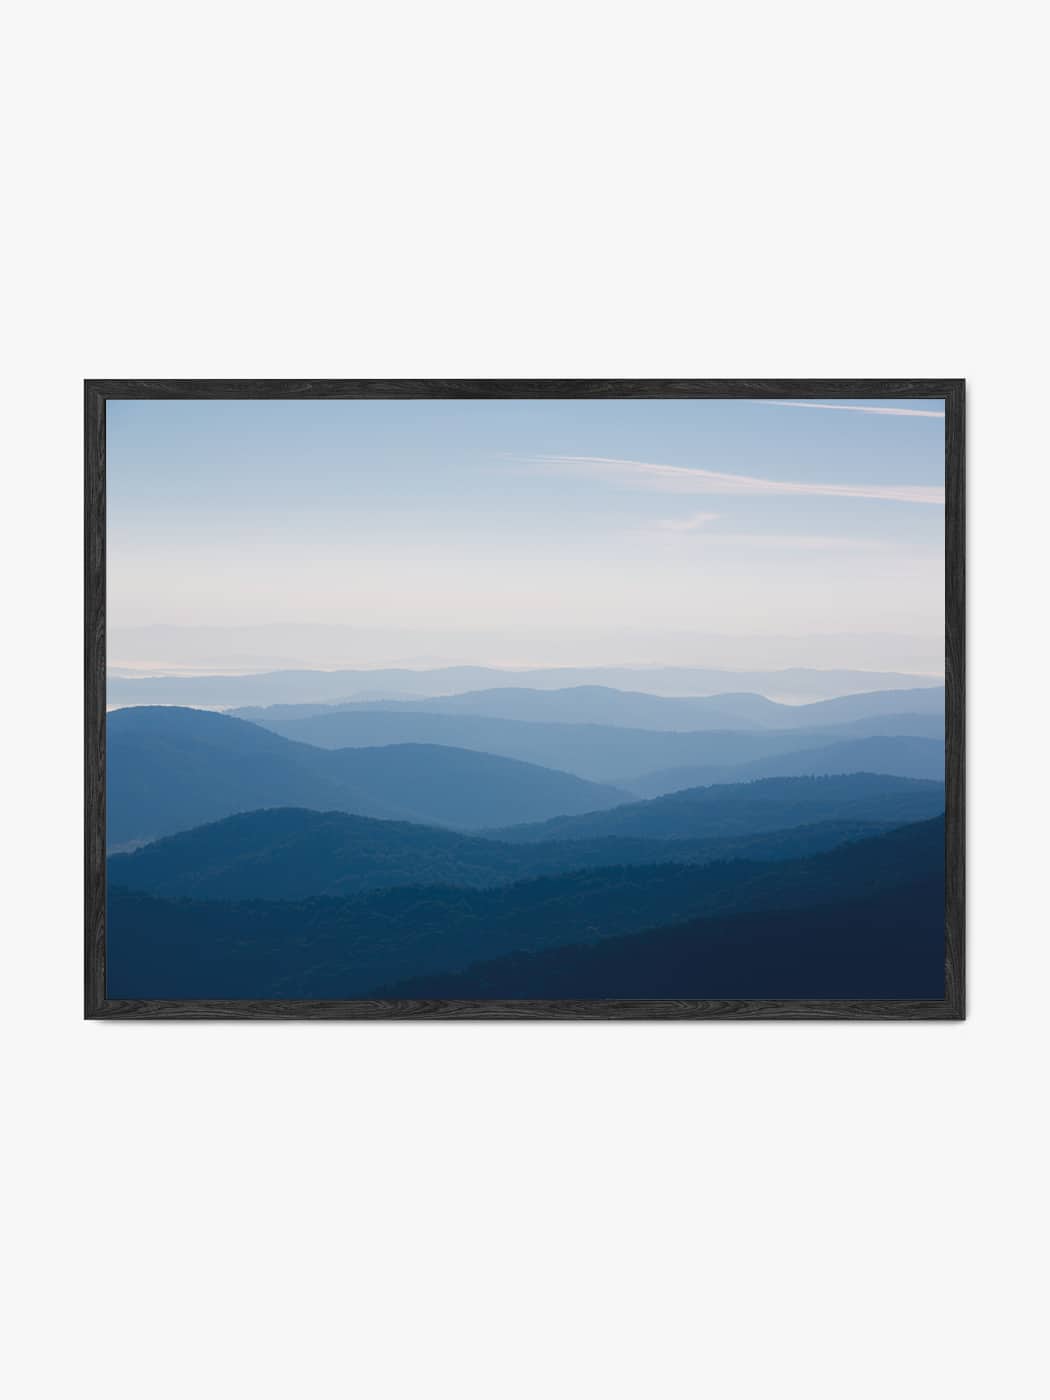 Obraz akustyczny ze zdjęcia - Niebieskie góry i doliny - Łukasz Popielarczyk